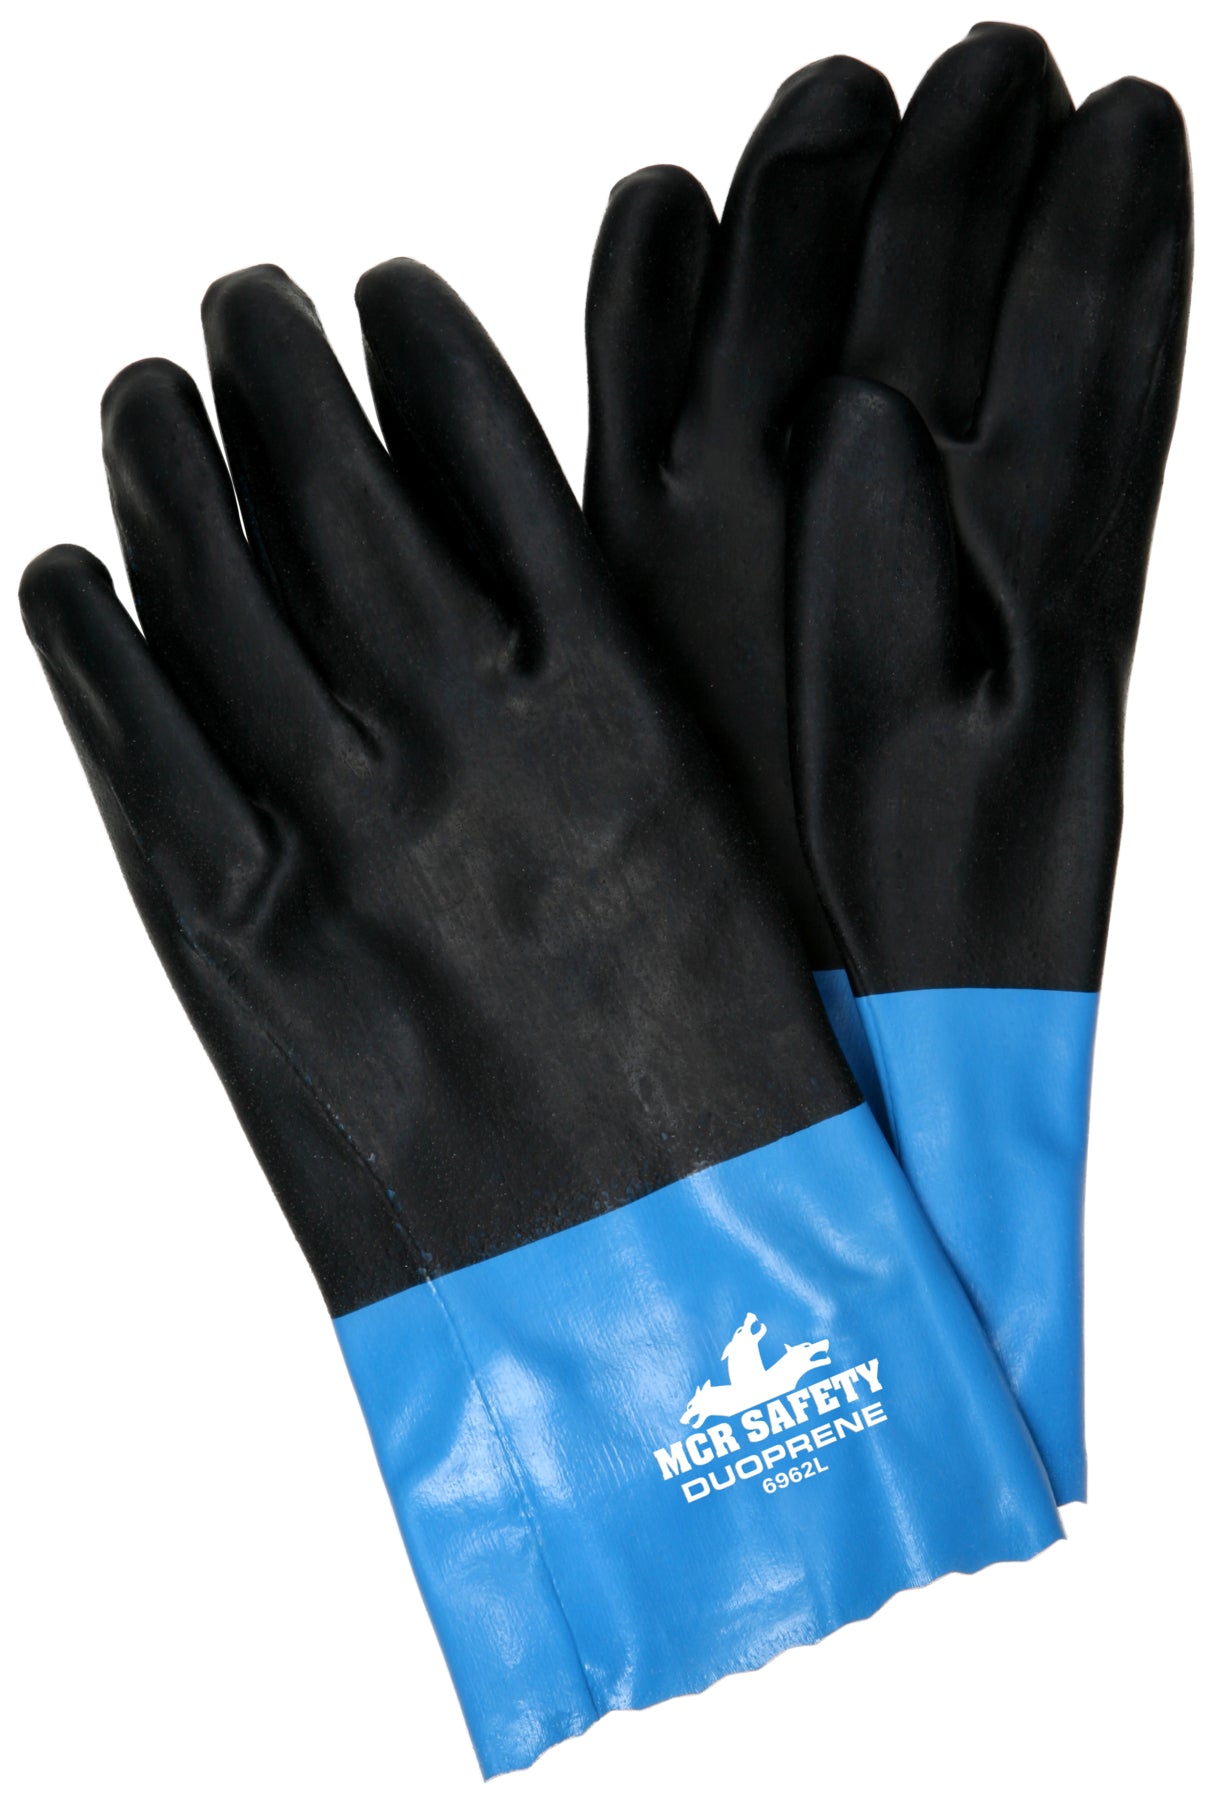 6962 - MCR Safety Duoprene® Glove